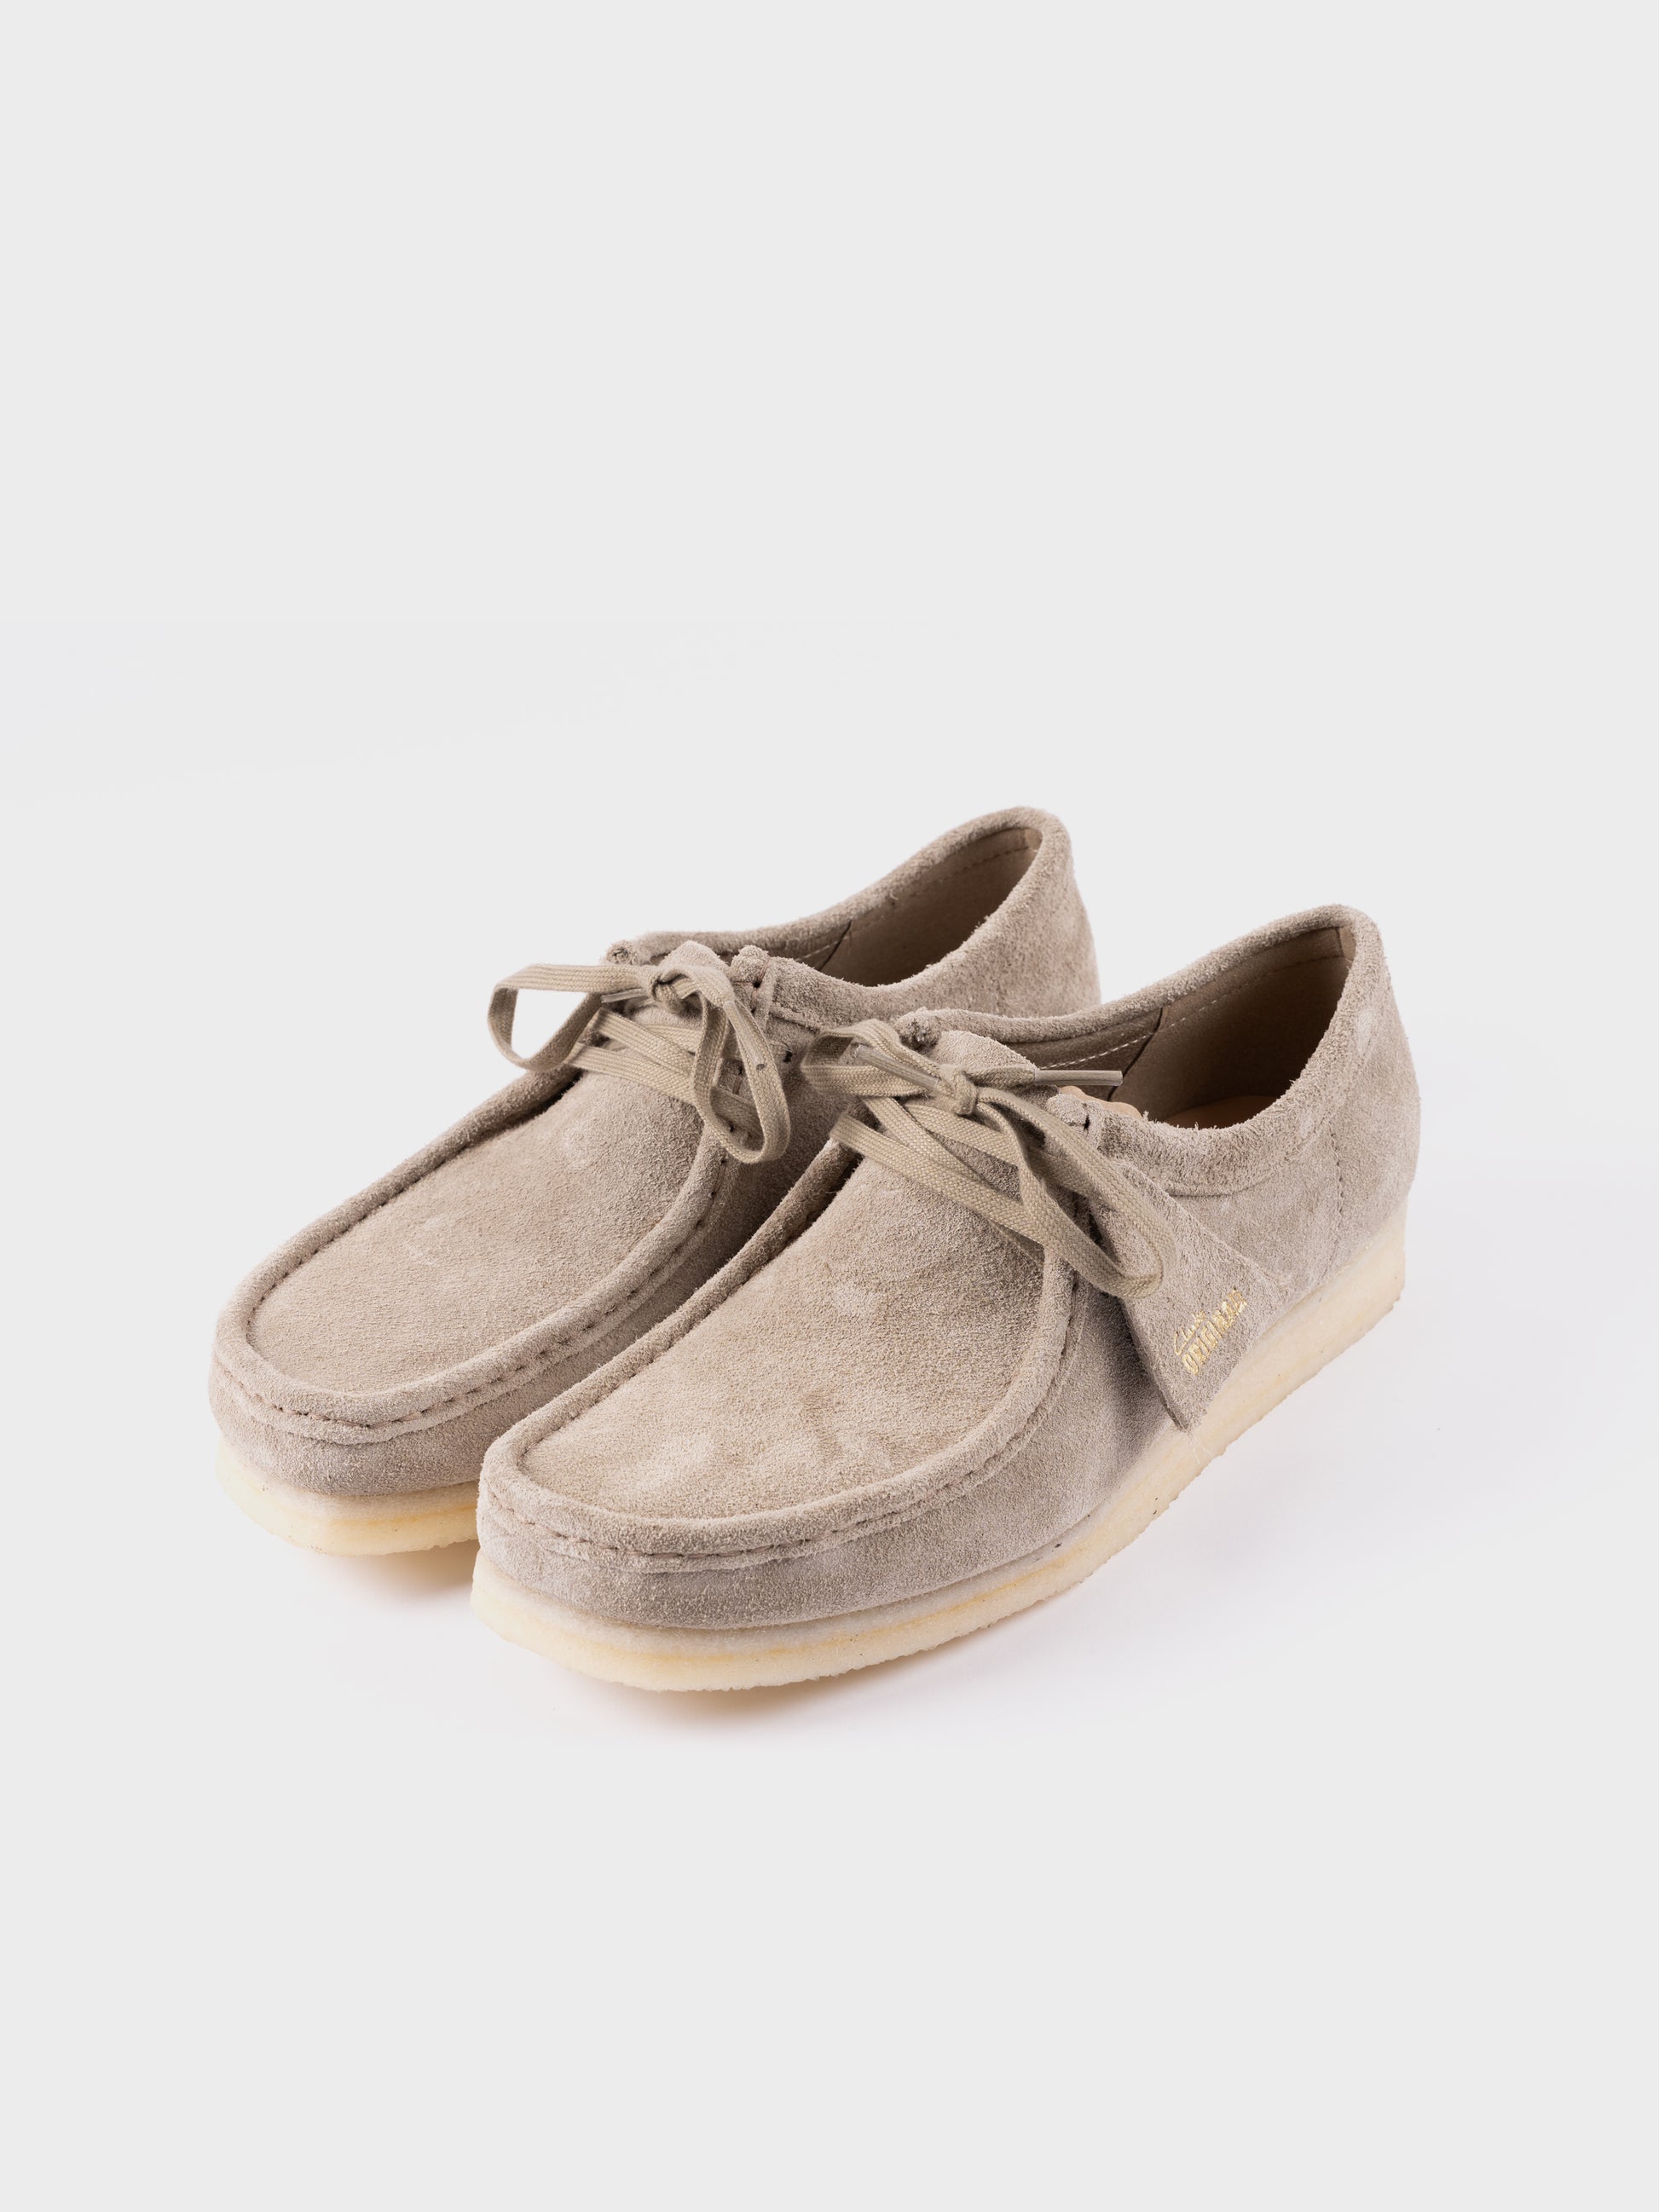 Clarks Originals Wallabee Boots - Pale Grey Suede